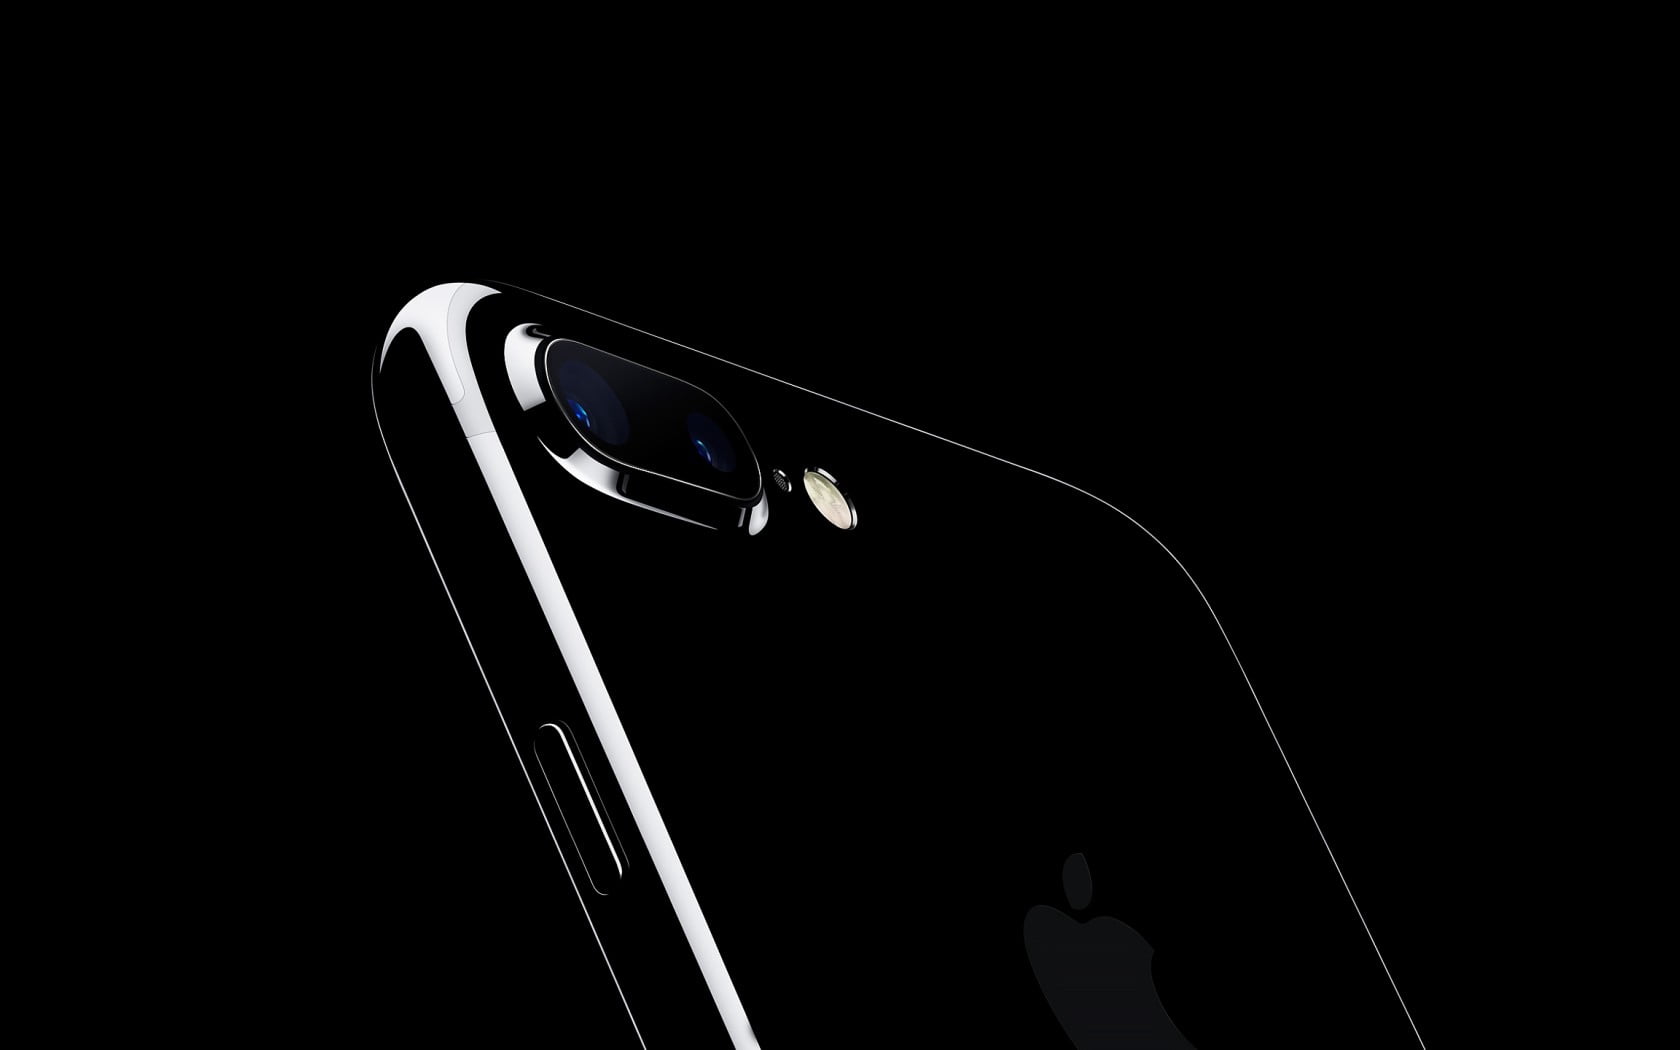 jet black iPhone 7 Plus, apple, design, black Color, car, technology